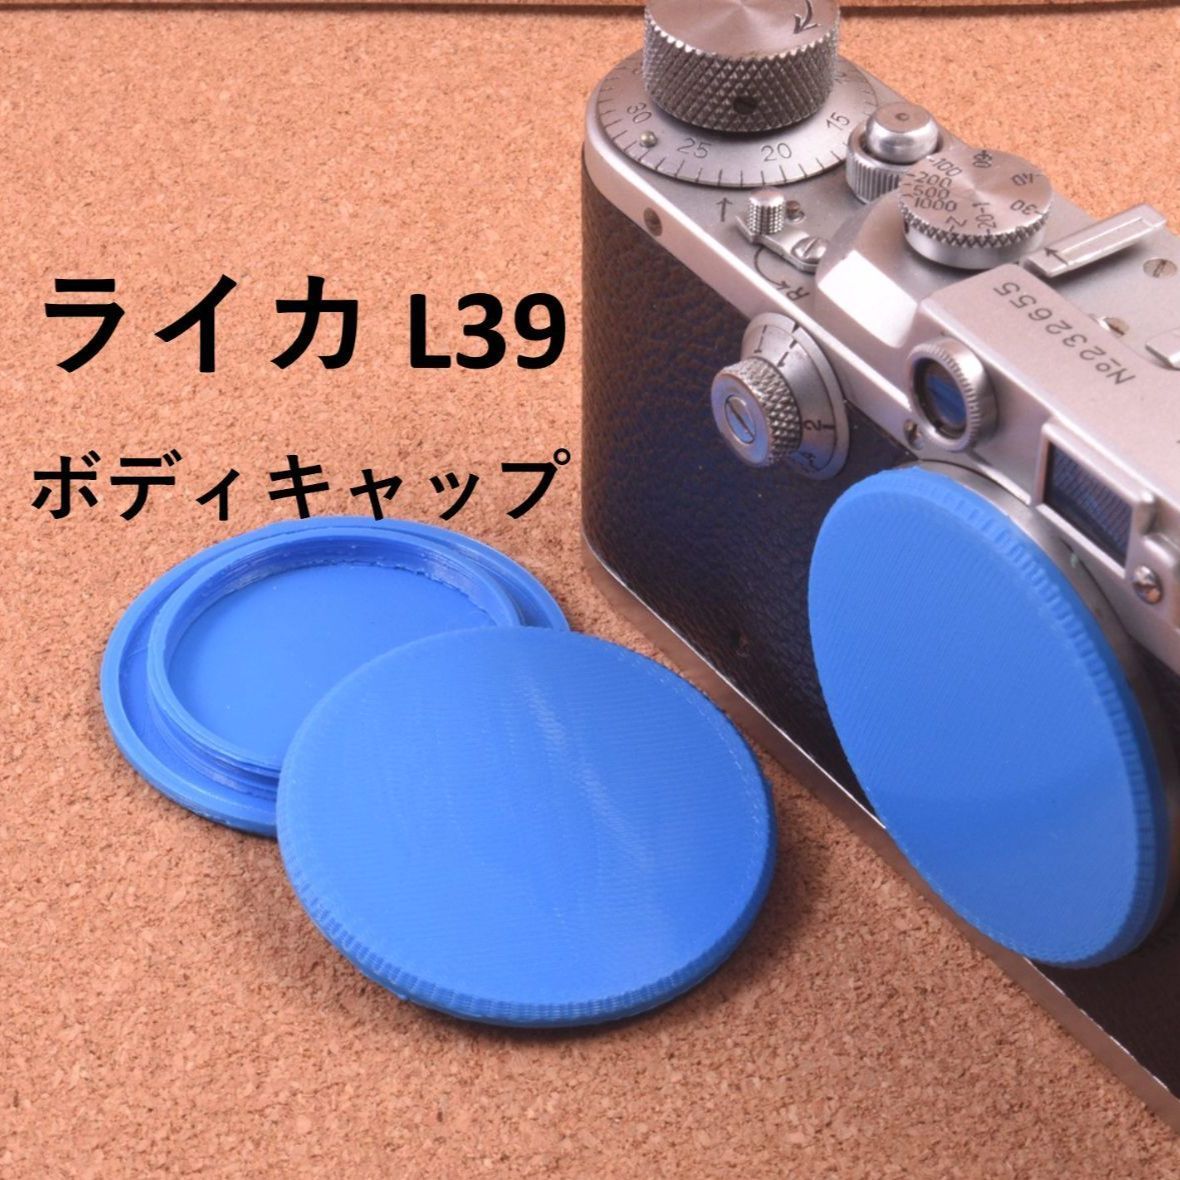 ライカL39マウント用 ボディキャップ 3枚 青 ブルー スクリュー 